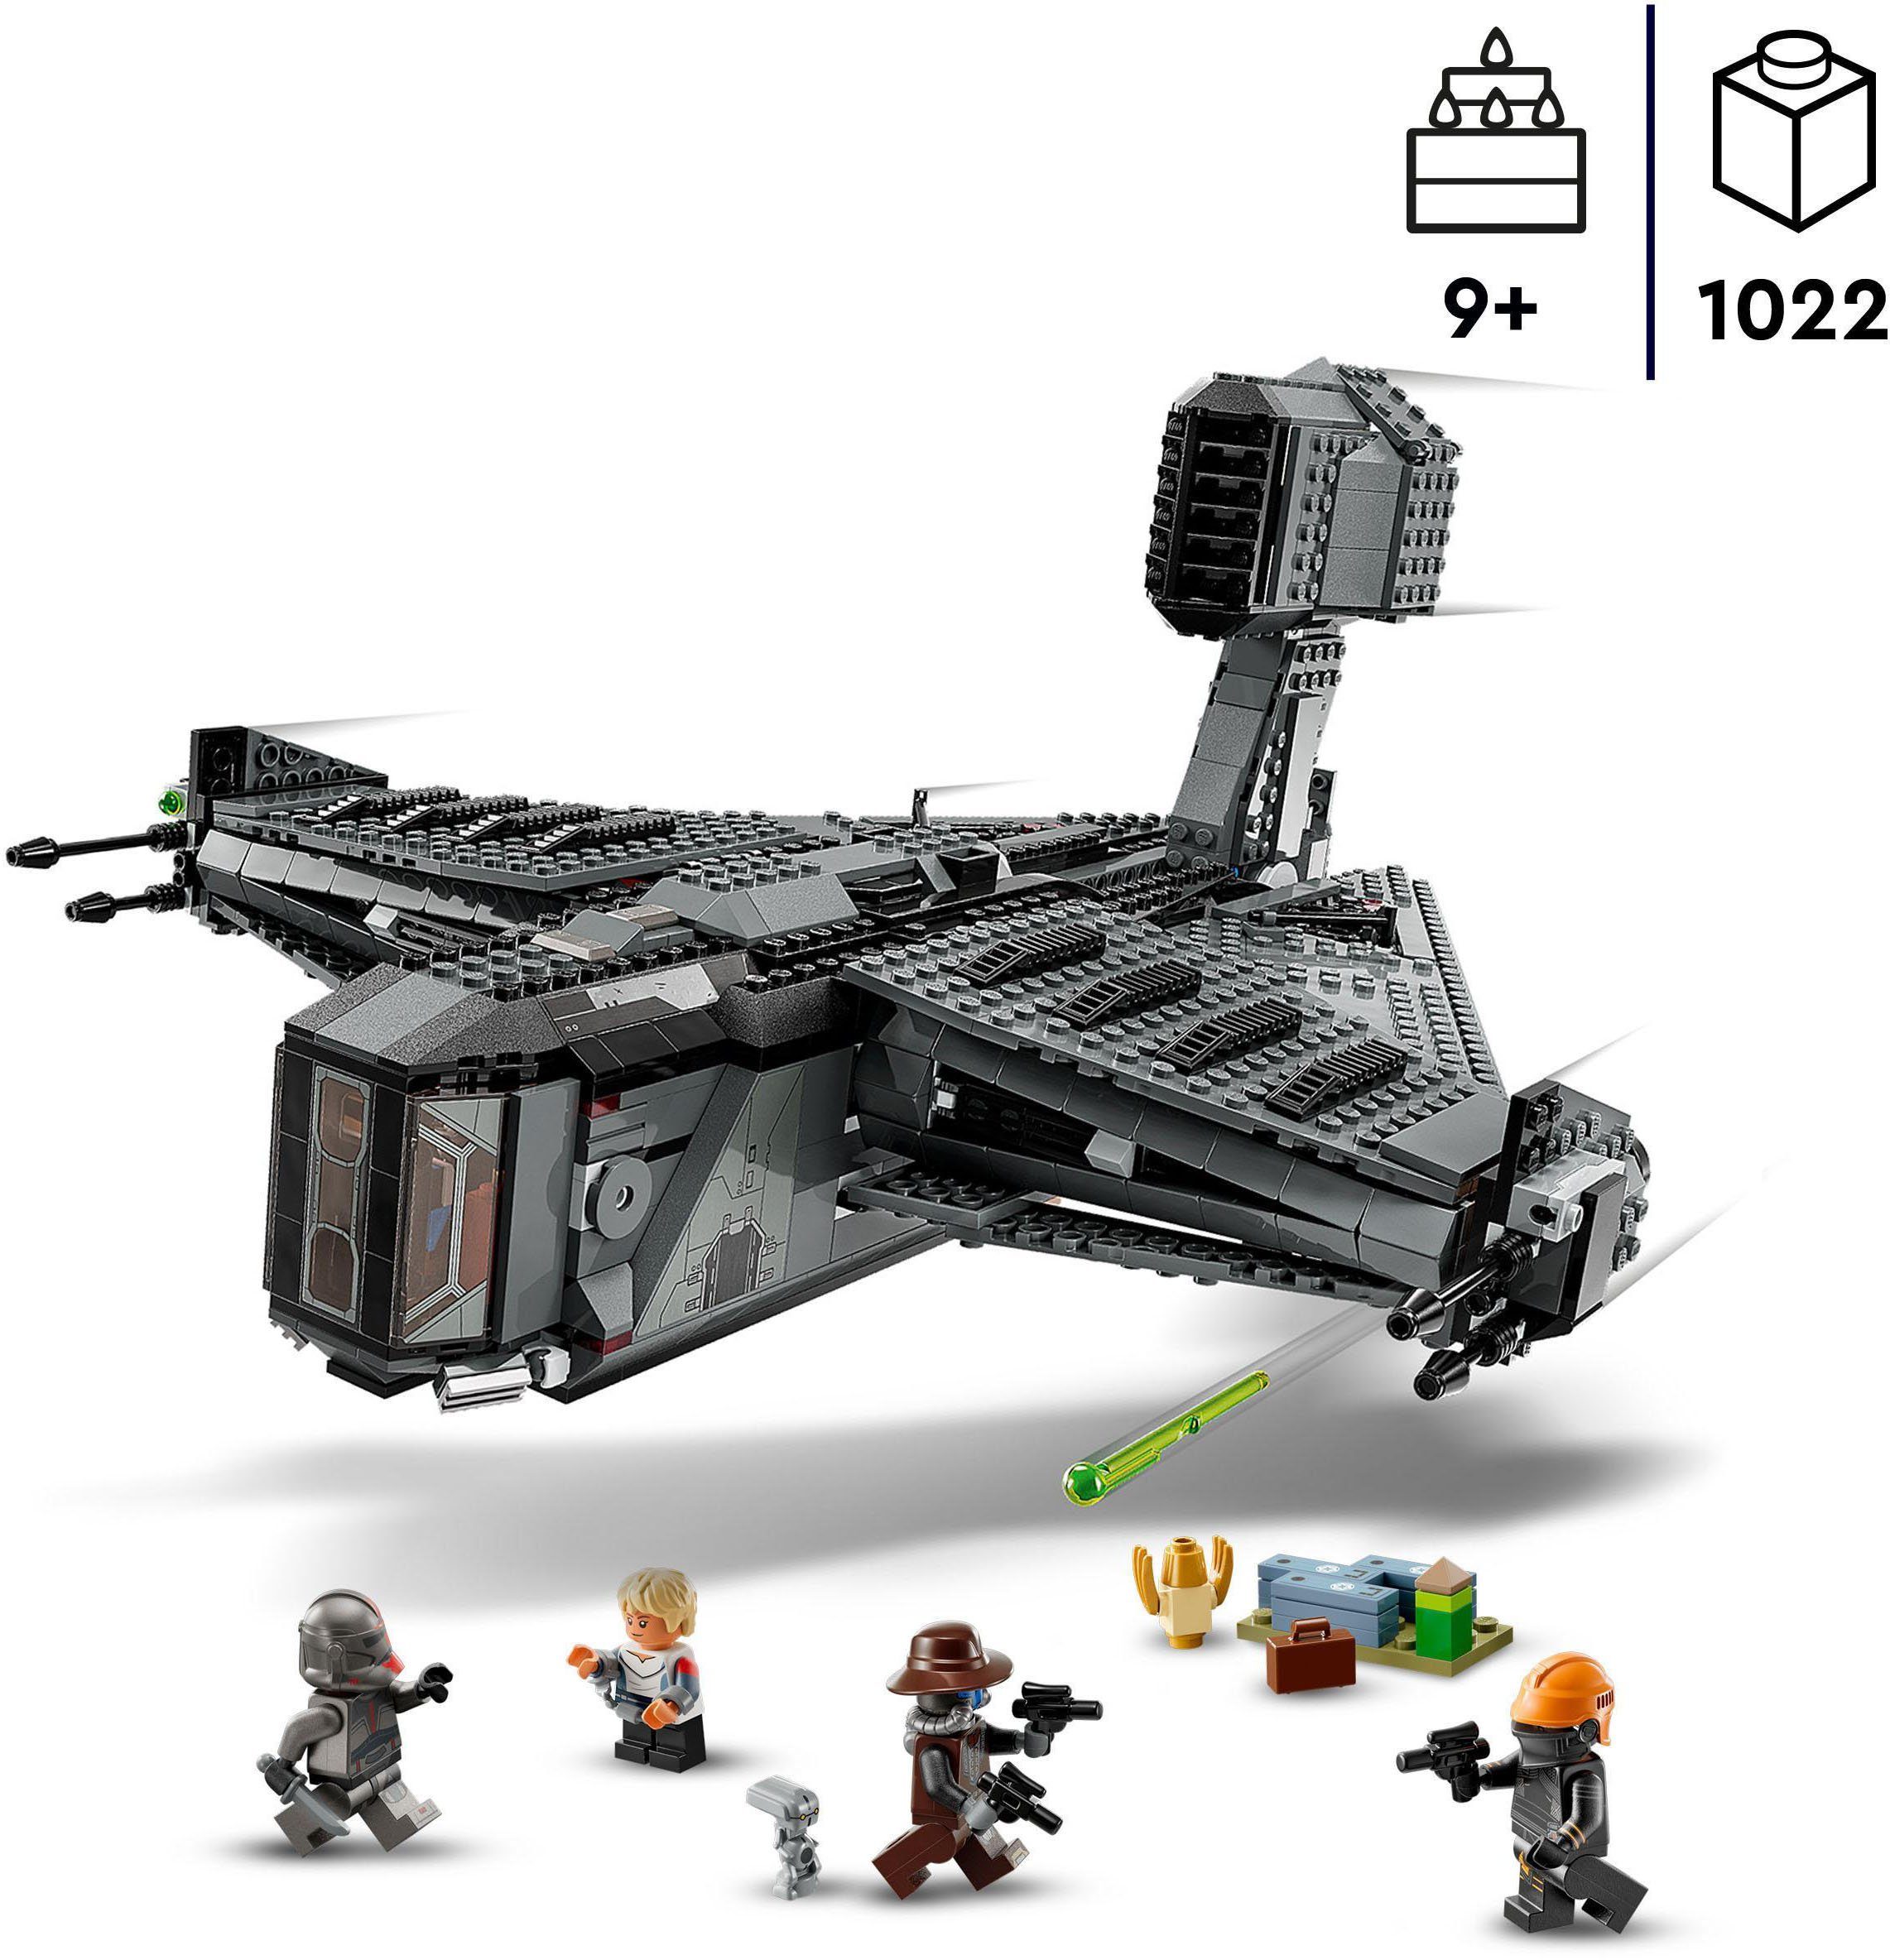 in (75323), LEGO® Star St), Justifier Europe Die Konstruktionsspielsteine LEGO® Made Wars (1022 TM,